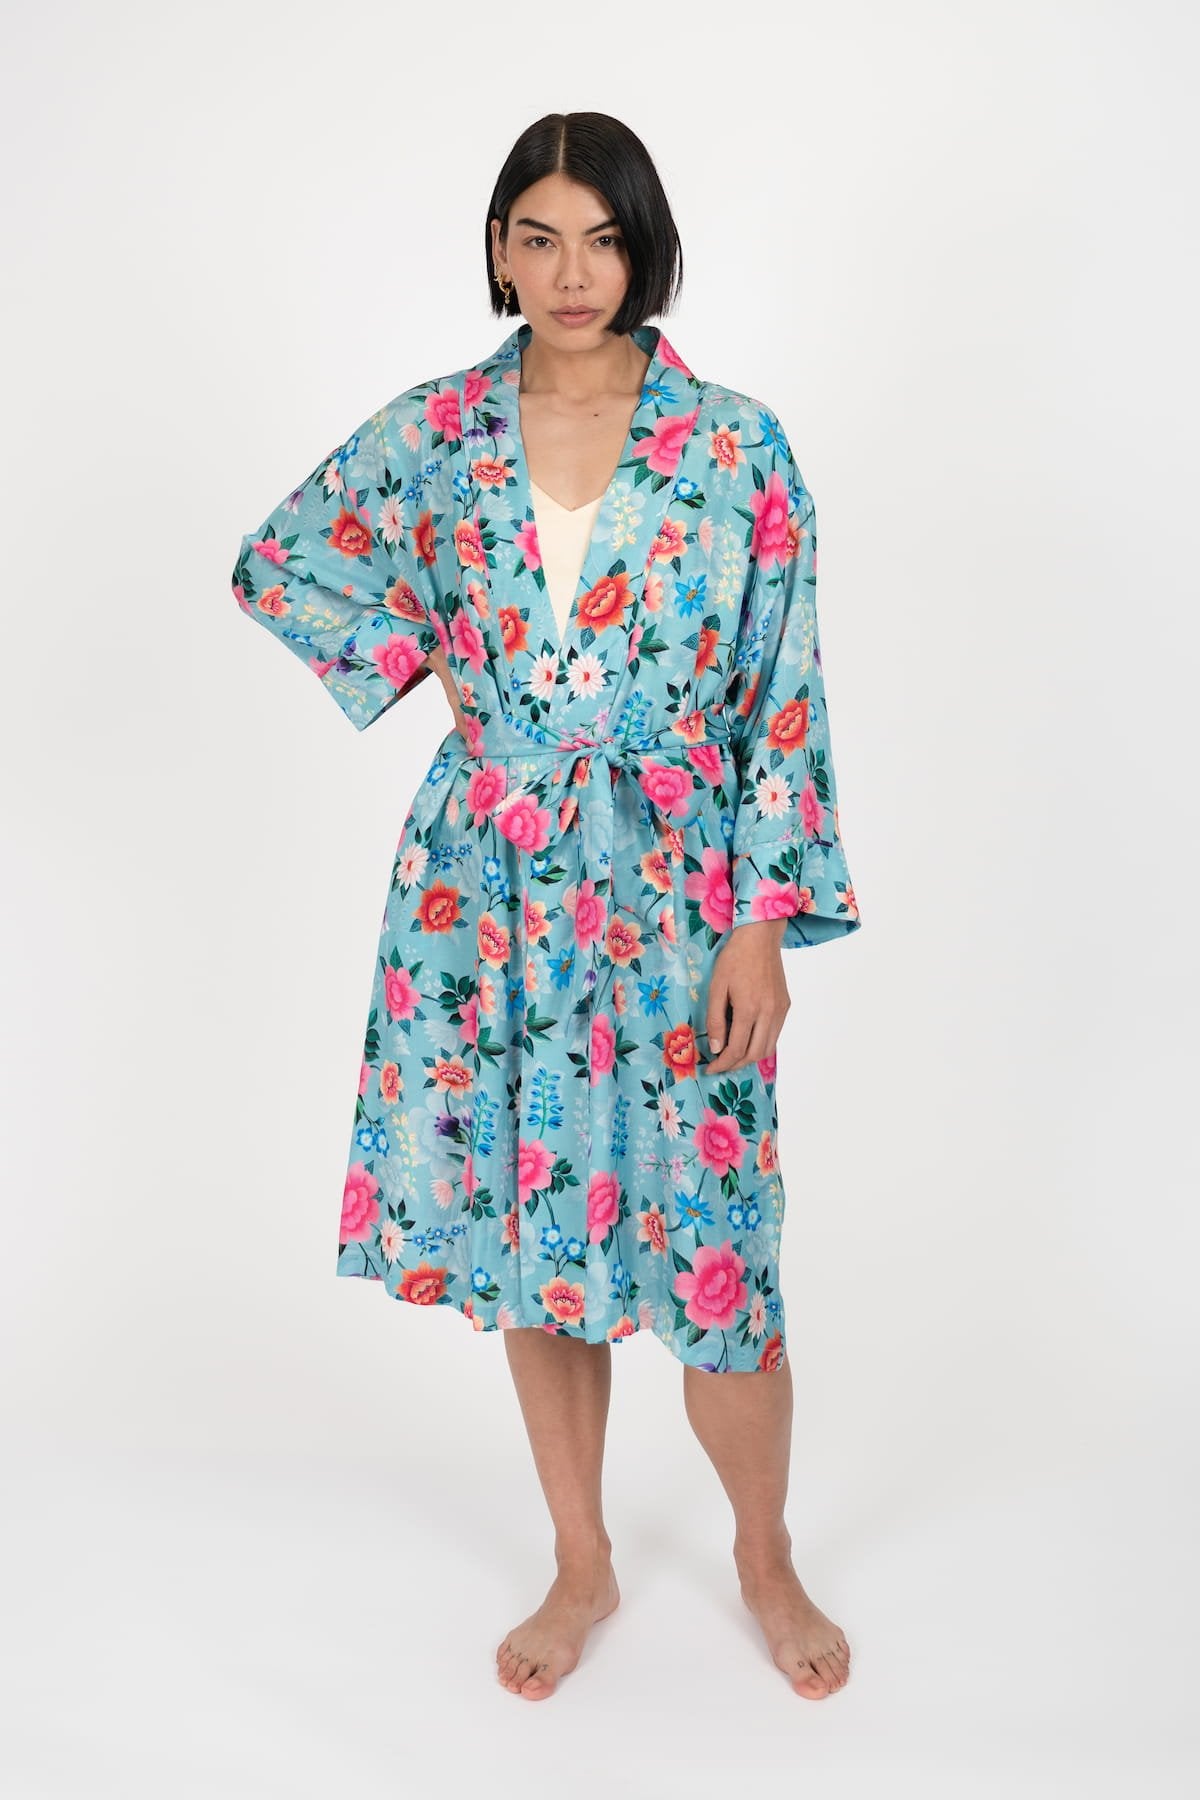 Elizabeth Kimono Robe - Front Main 1 - Luxury Kimono Robes - Orchard Moon